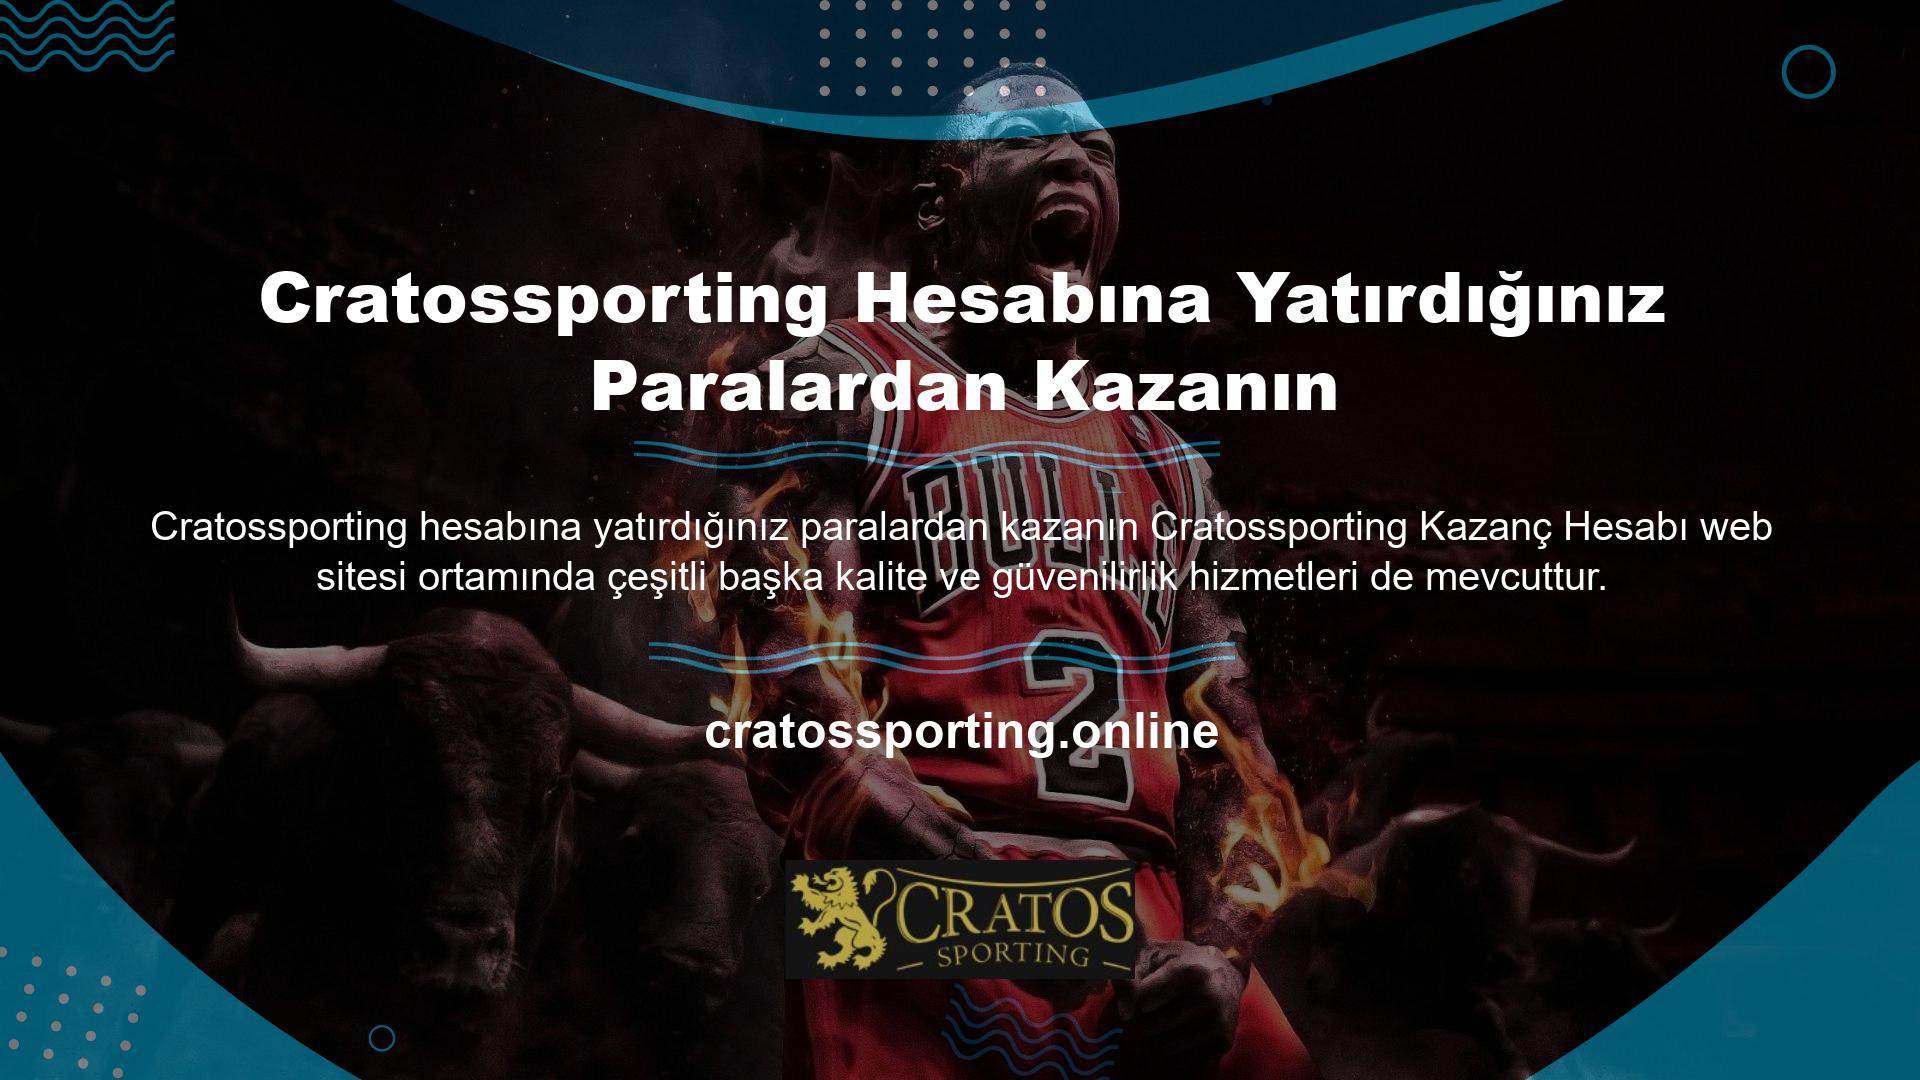 Cratossporting kurulduğu günden itibaren hesabınıza para yatırarak kaliteli hizmet vermektedir